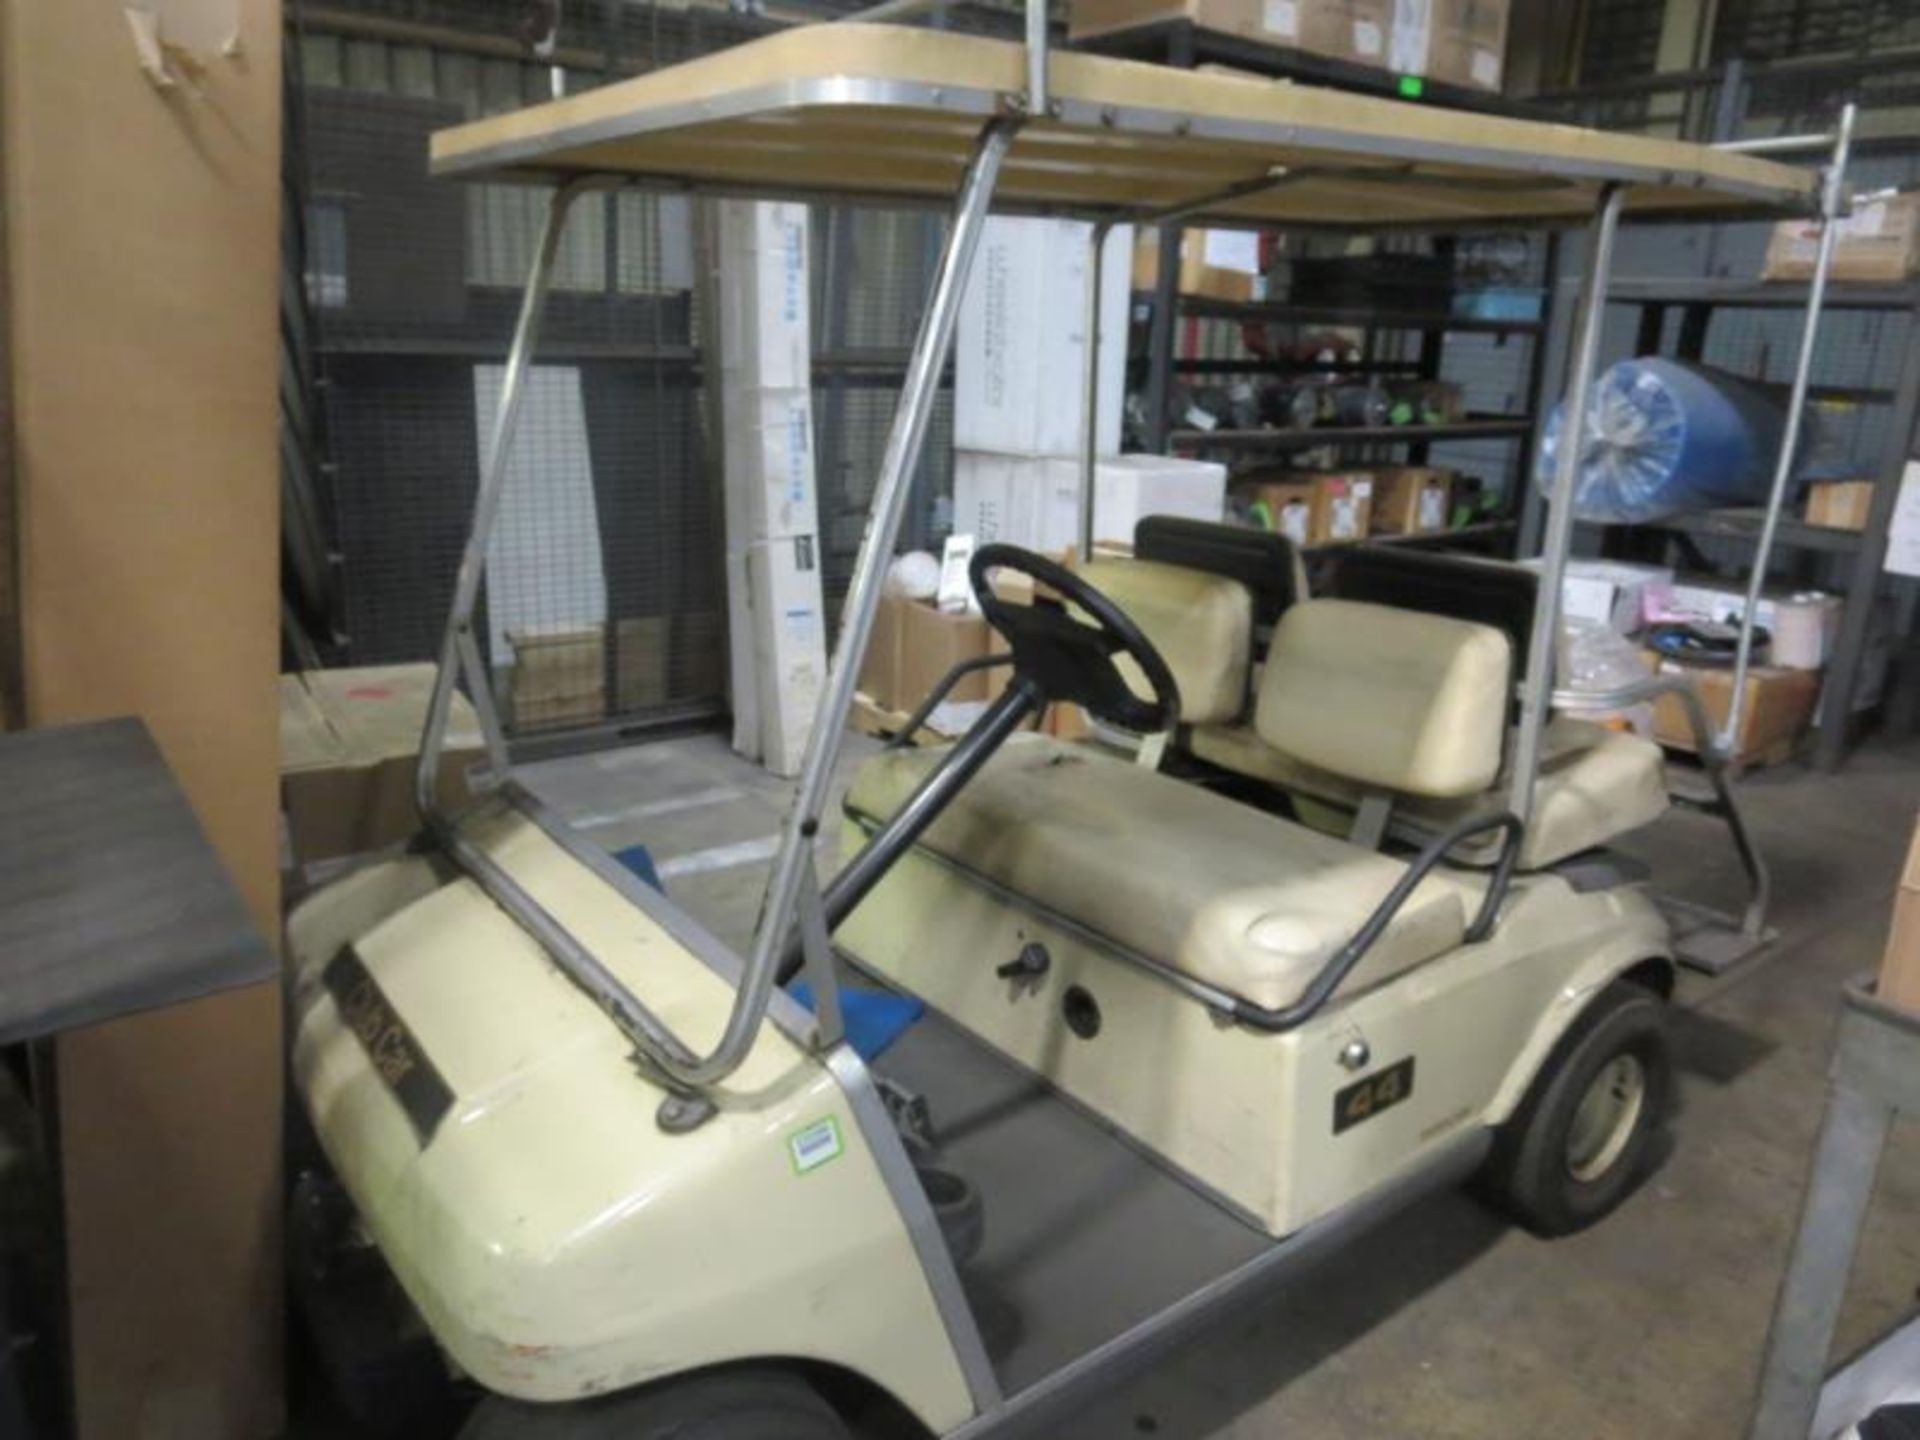 Club Car Golf Cart, 48v. Needs Batteries. SN# A9831-6\9703. Hit # 2202990. Bldg.1 Cage. Asset